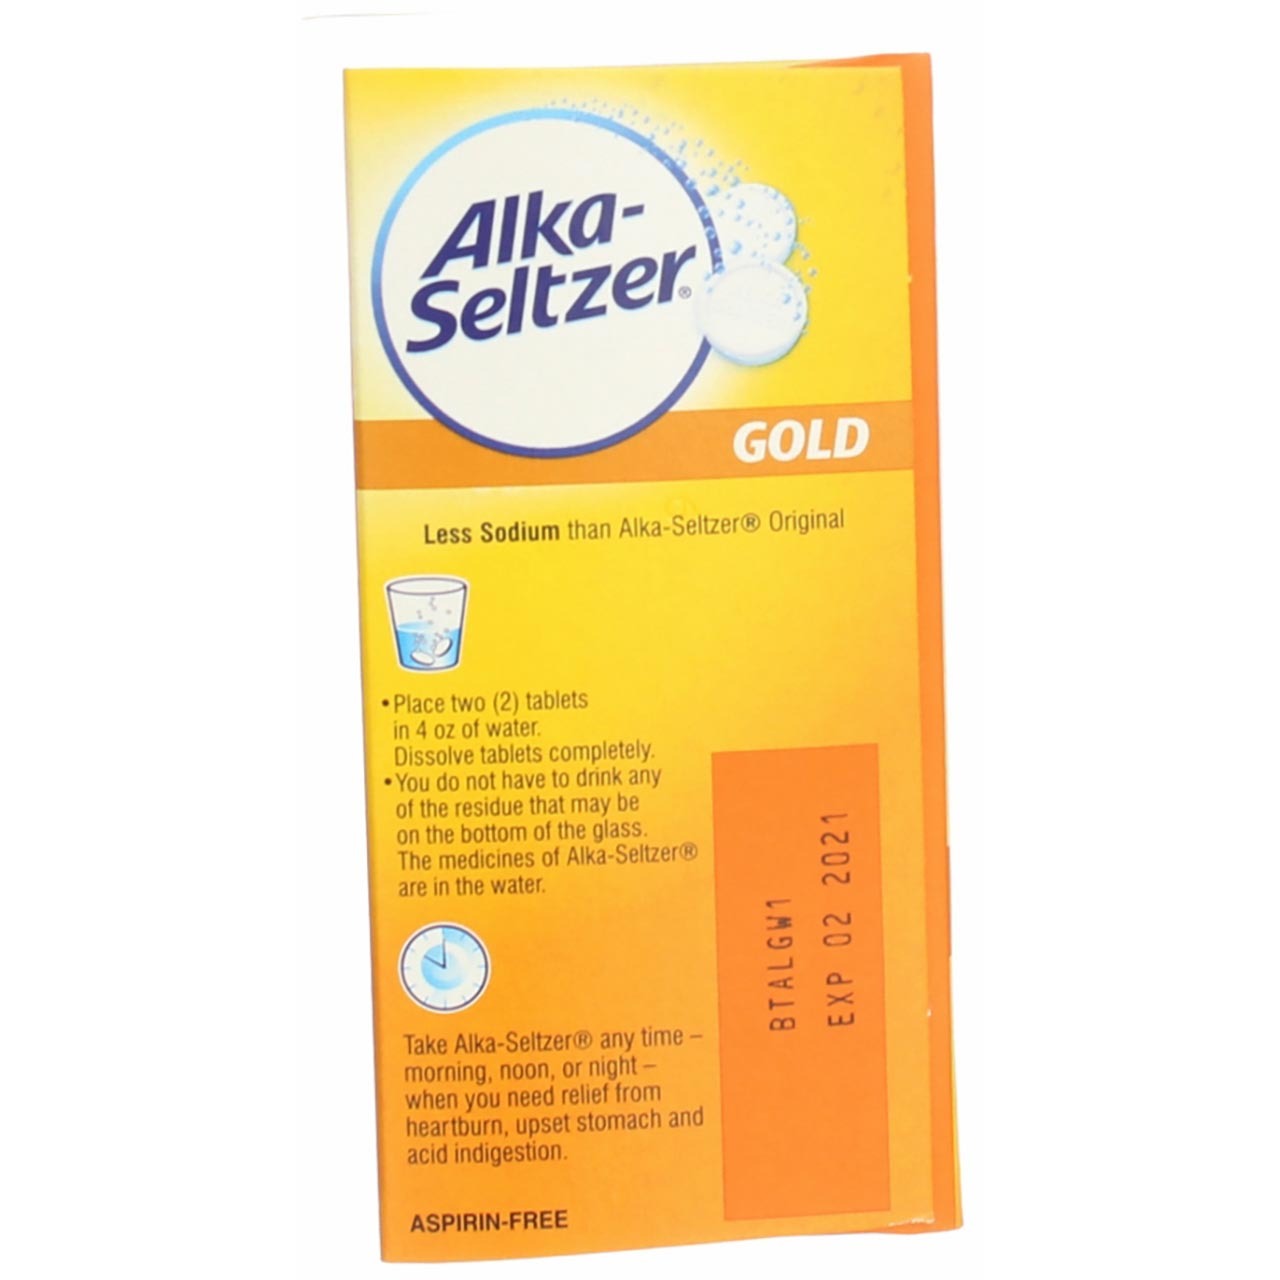 Alka-Seltzer Effervescent Tablets Gold 36 Tablets (Pack of 3) - image 4 of 6